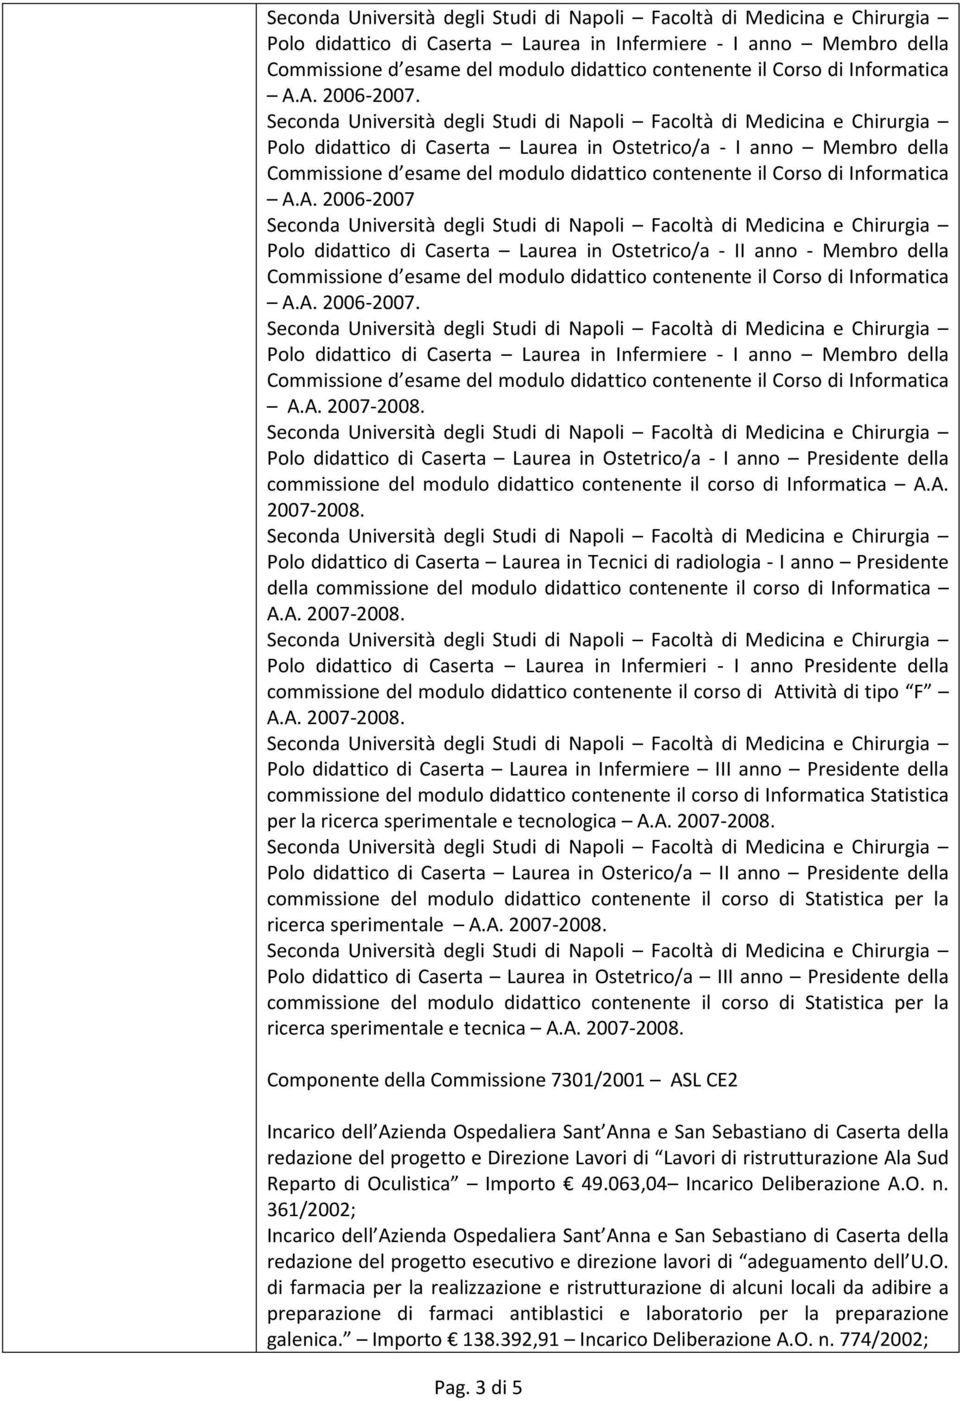 Polo didattico di Caserta Laurea in Ostetrico/a - I anno Presidente della commissione del modulo didattico contenente il corso di Informatica A.A. 2007-2008.